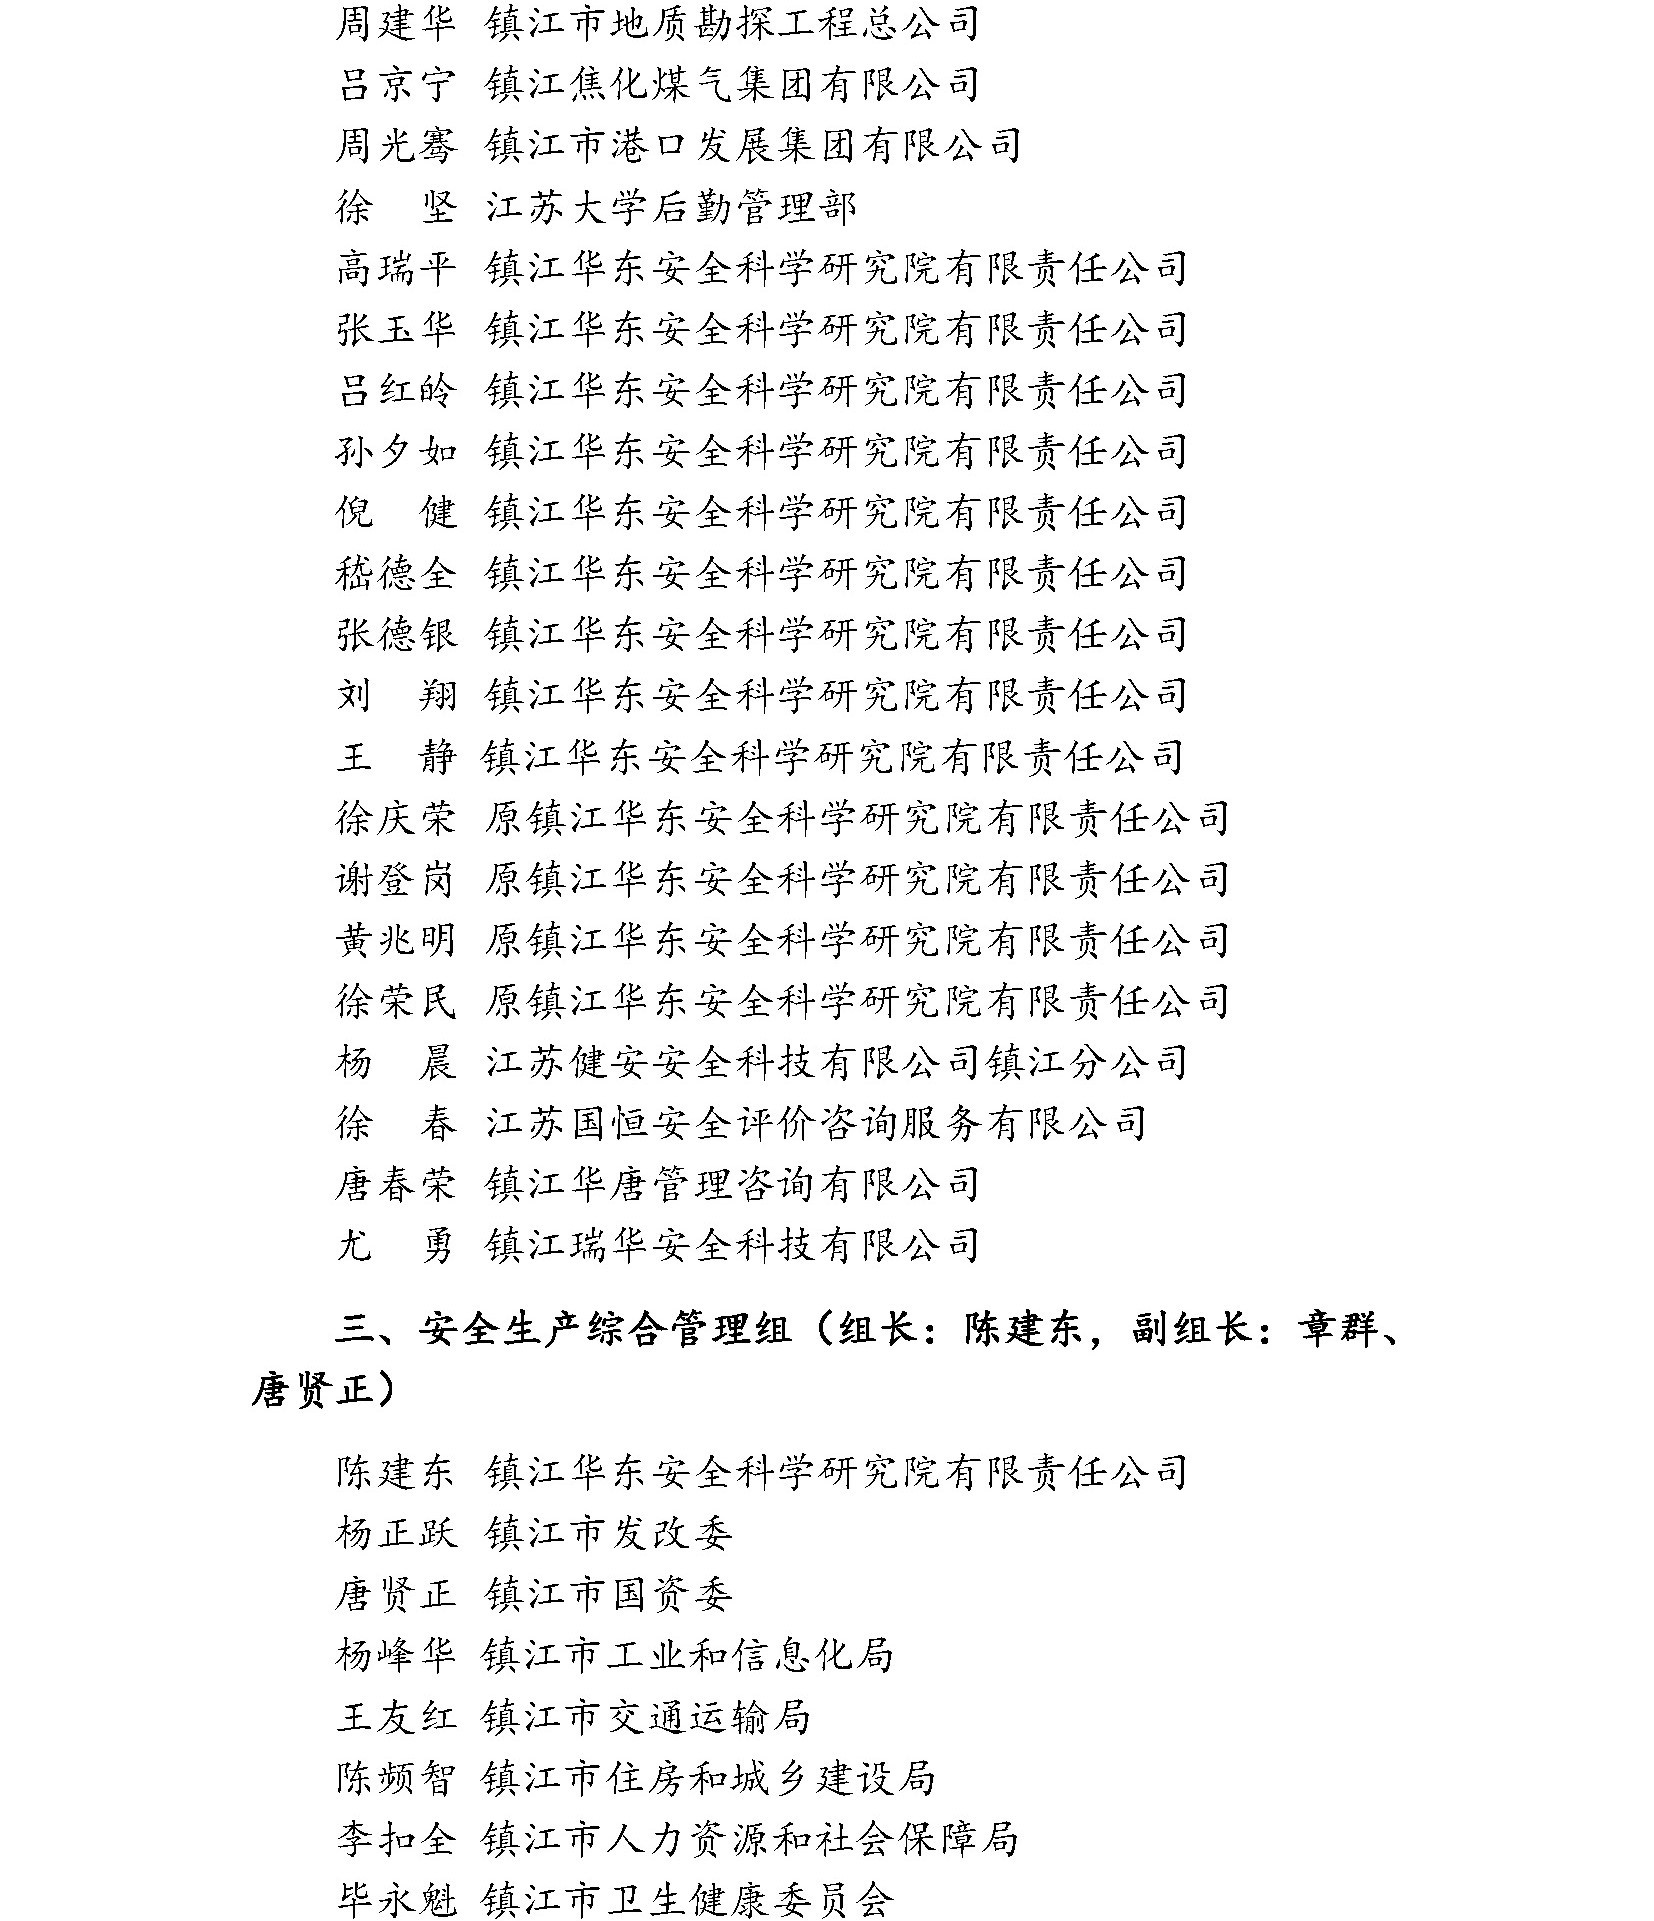 镇江市安全生产科学技术学会专家委员会成员名单公示(图5)